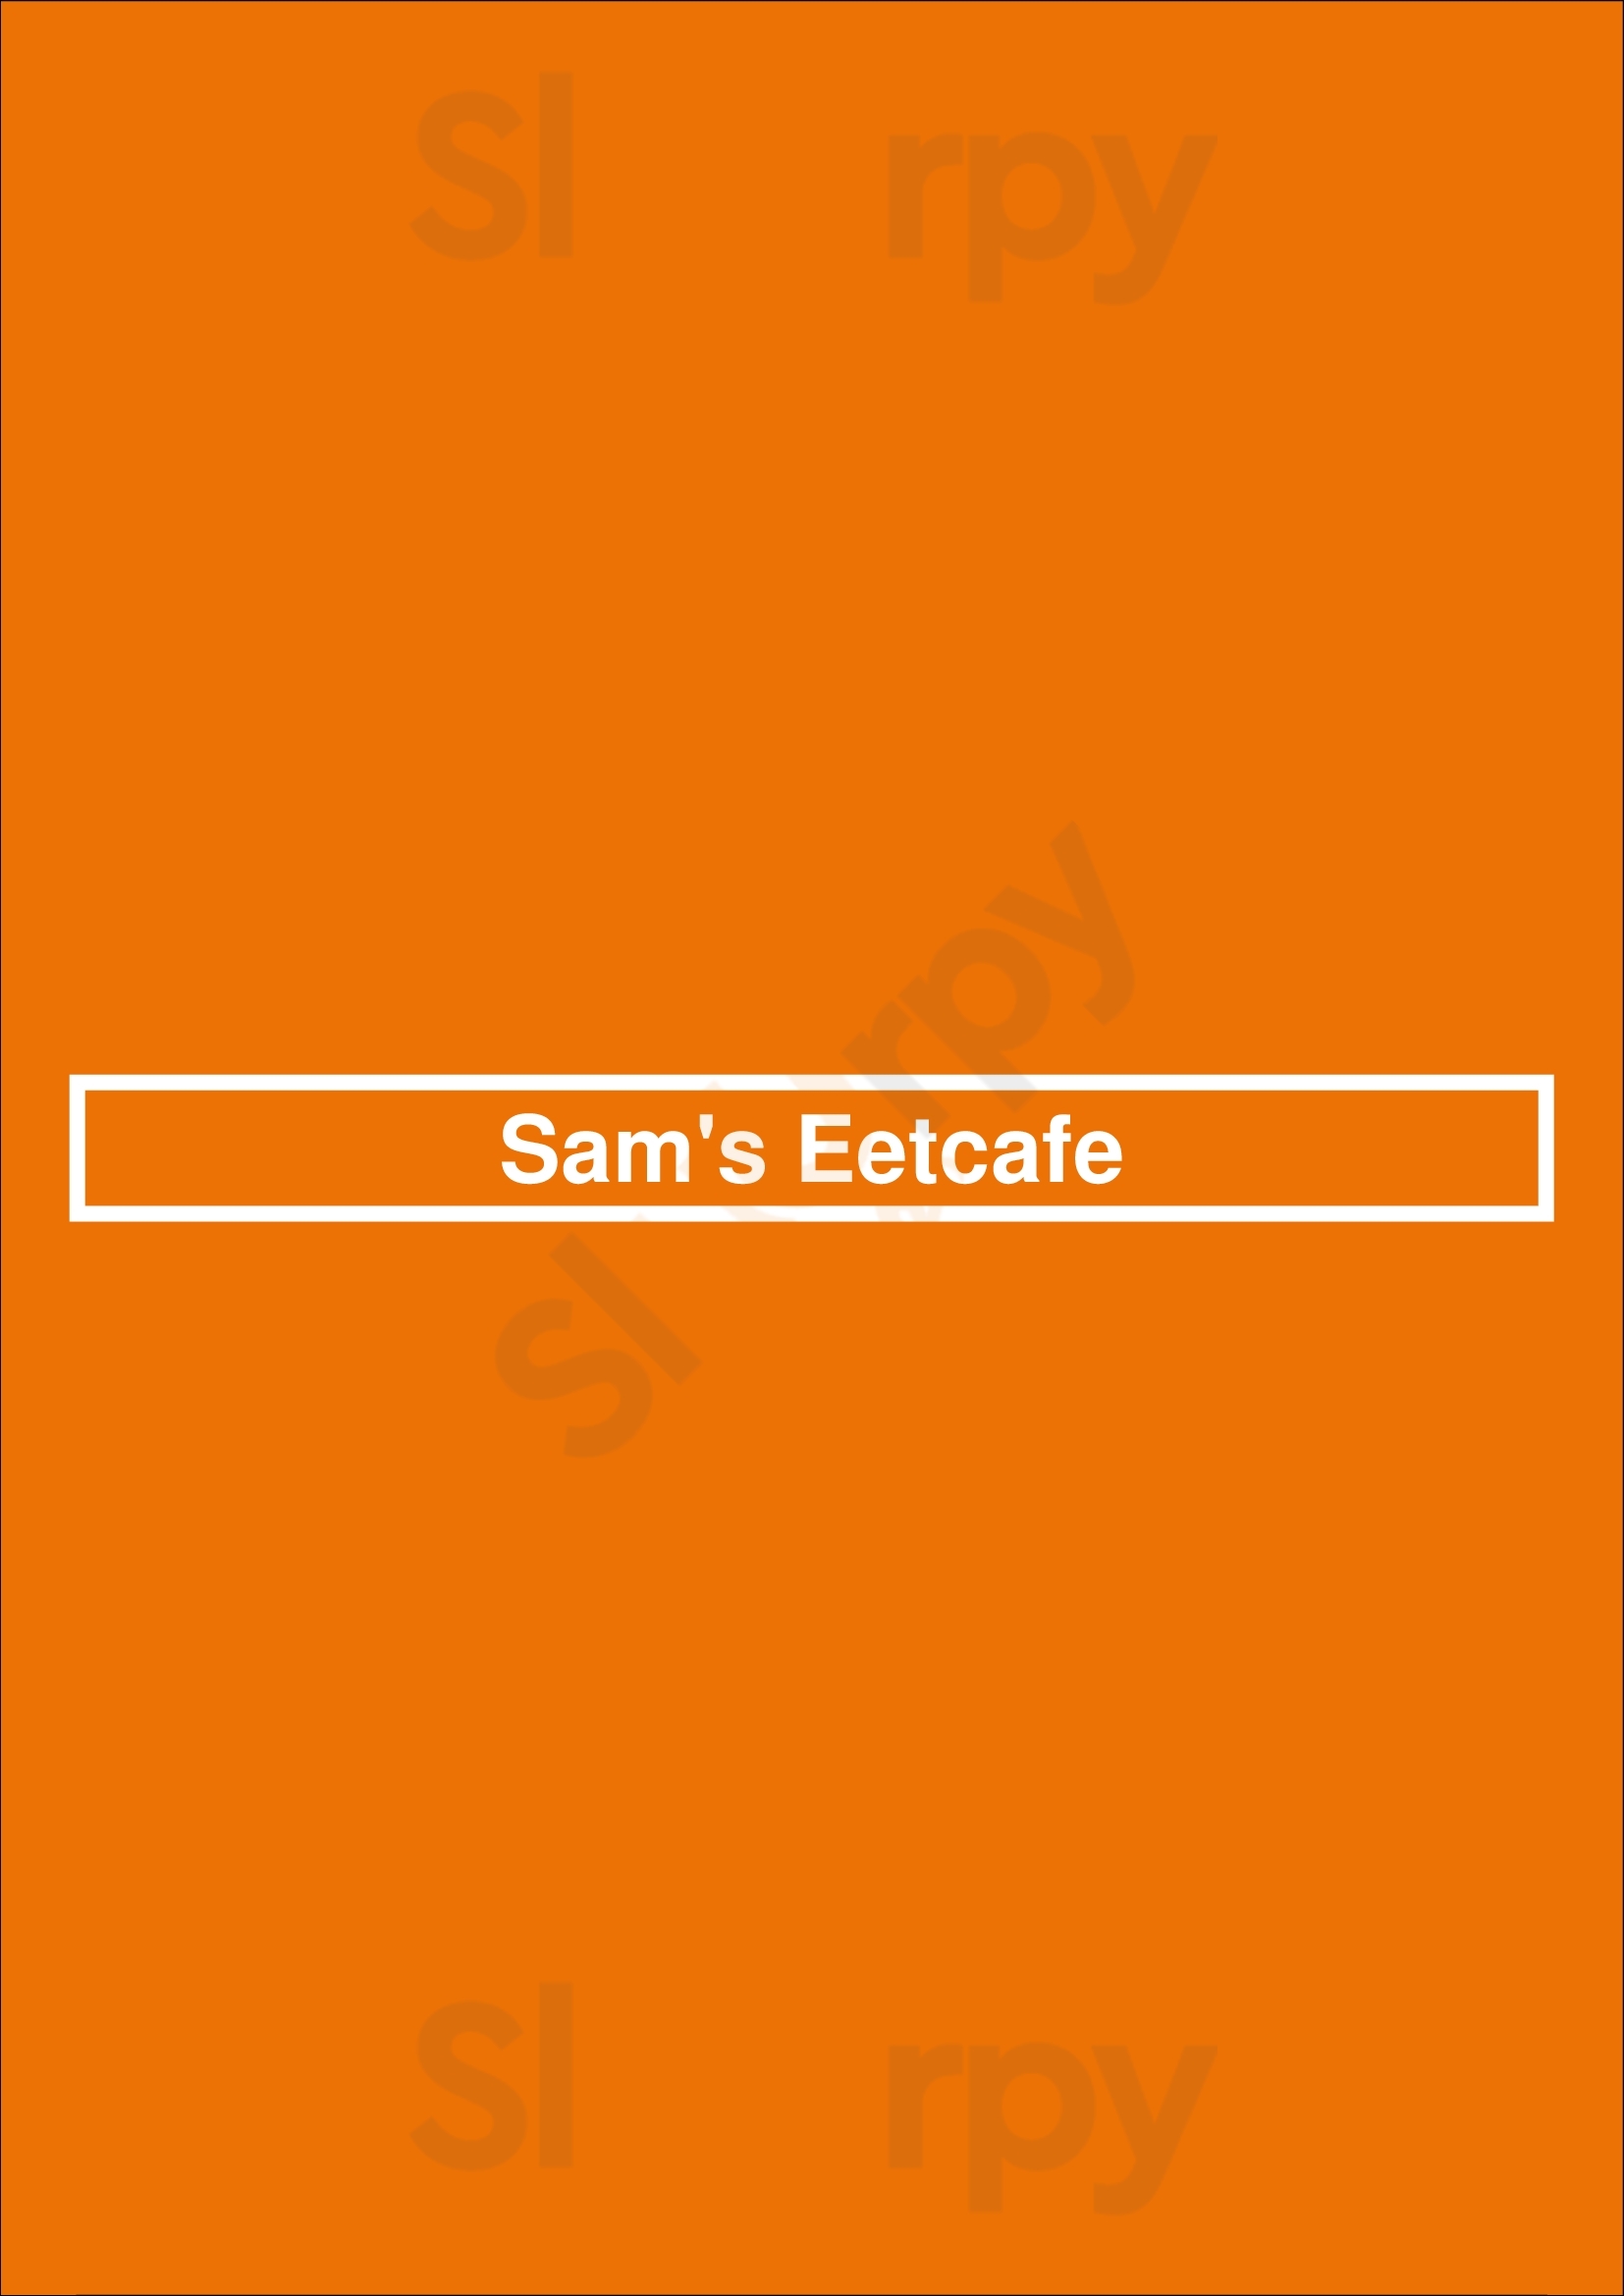 Sam's Eetcafe Lochem Menu - 1